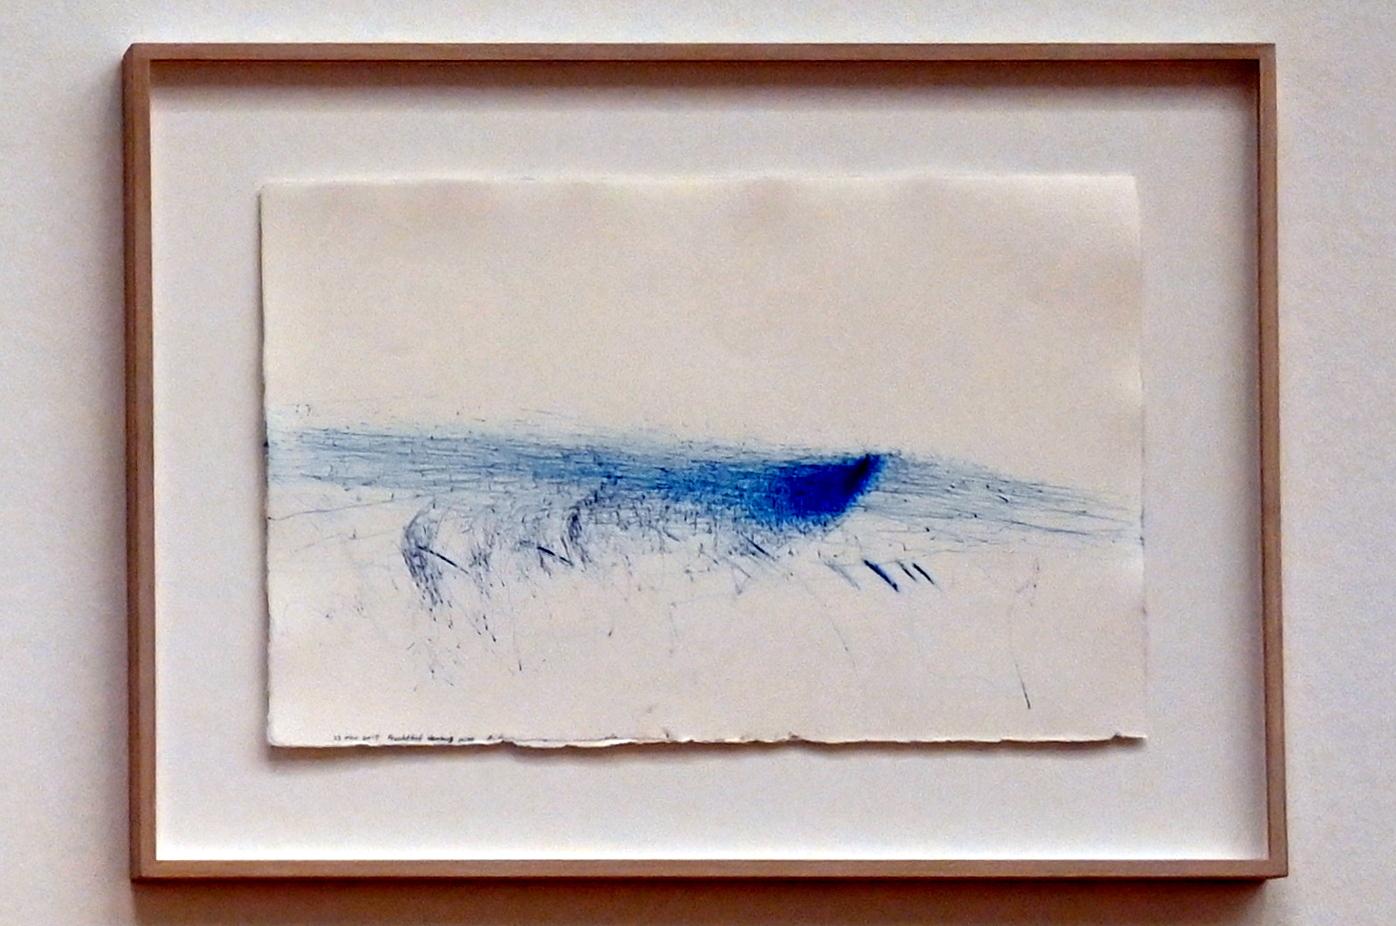 Rikuo Ueda (1997–2022), Wind, 23. Mar. 2015, Fruchthof, Hamburg 10:00, Bonn, Kunstmuseum, Ausstellung "Welt in der Schwebe" vom 24.02. - 19.06.2022, Saal 6, 2015